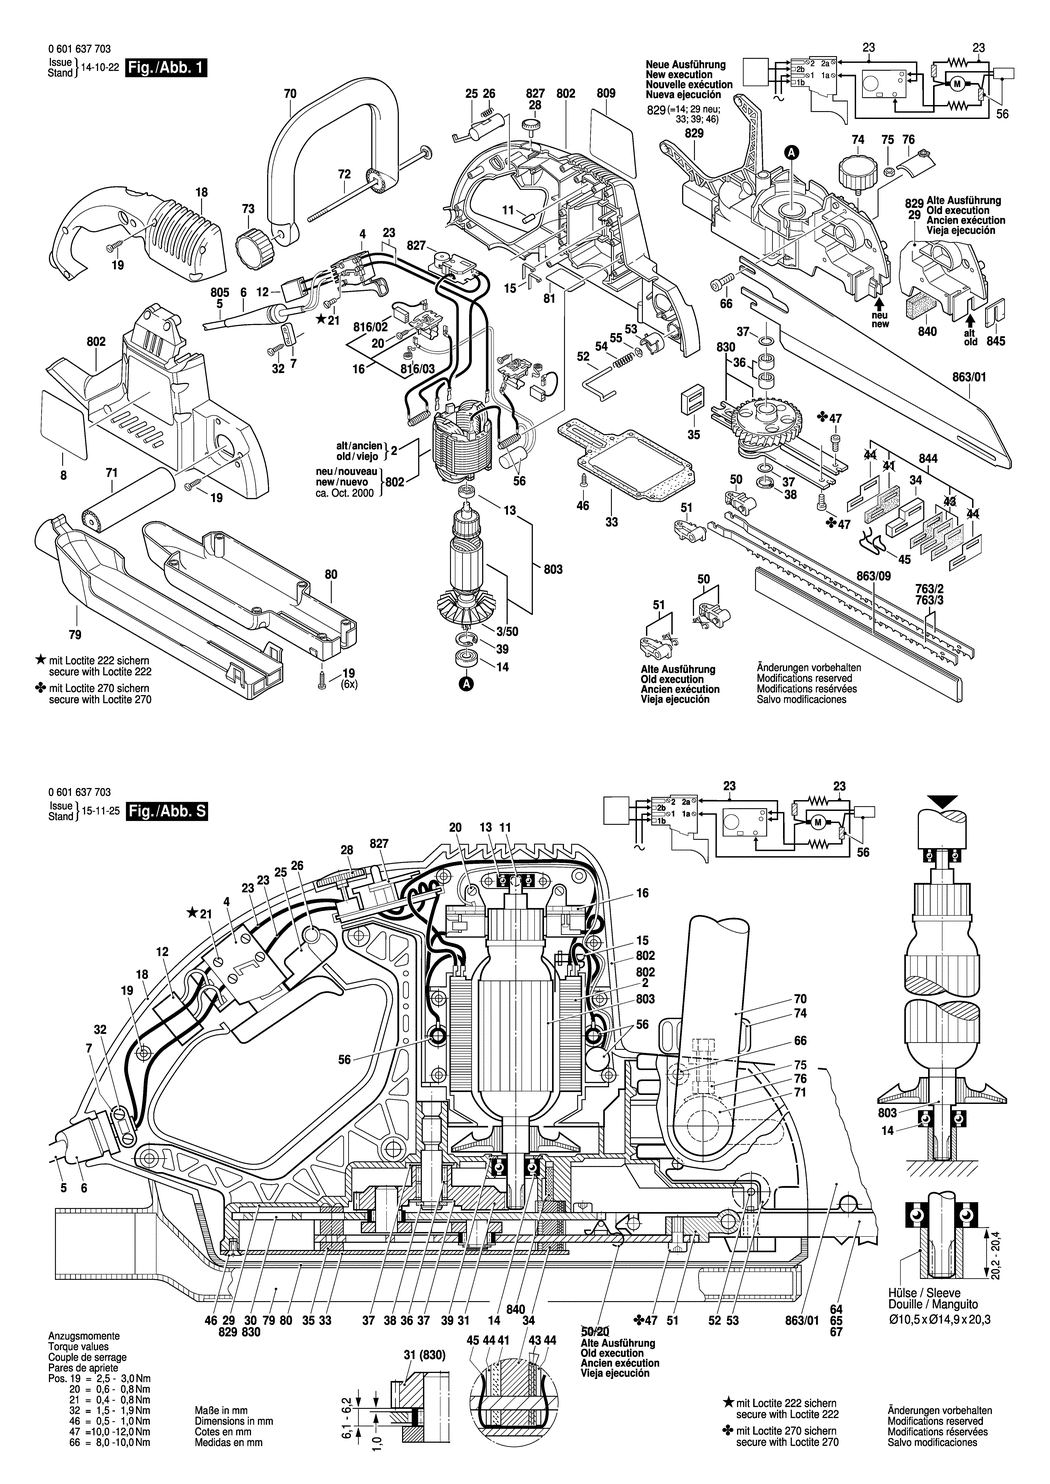 GFZ 16-35 AC